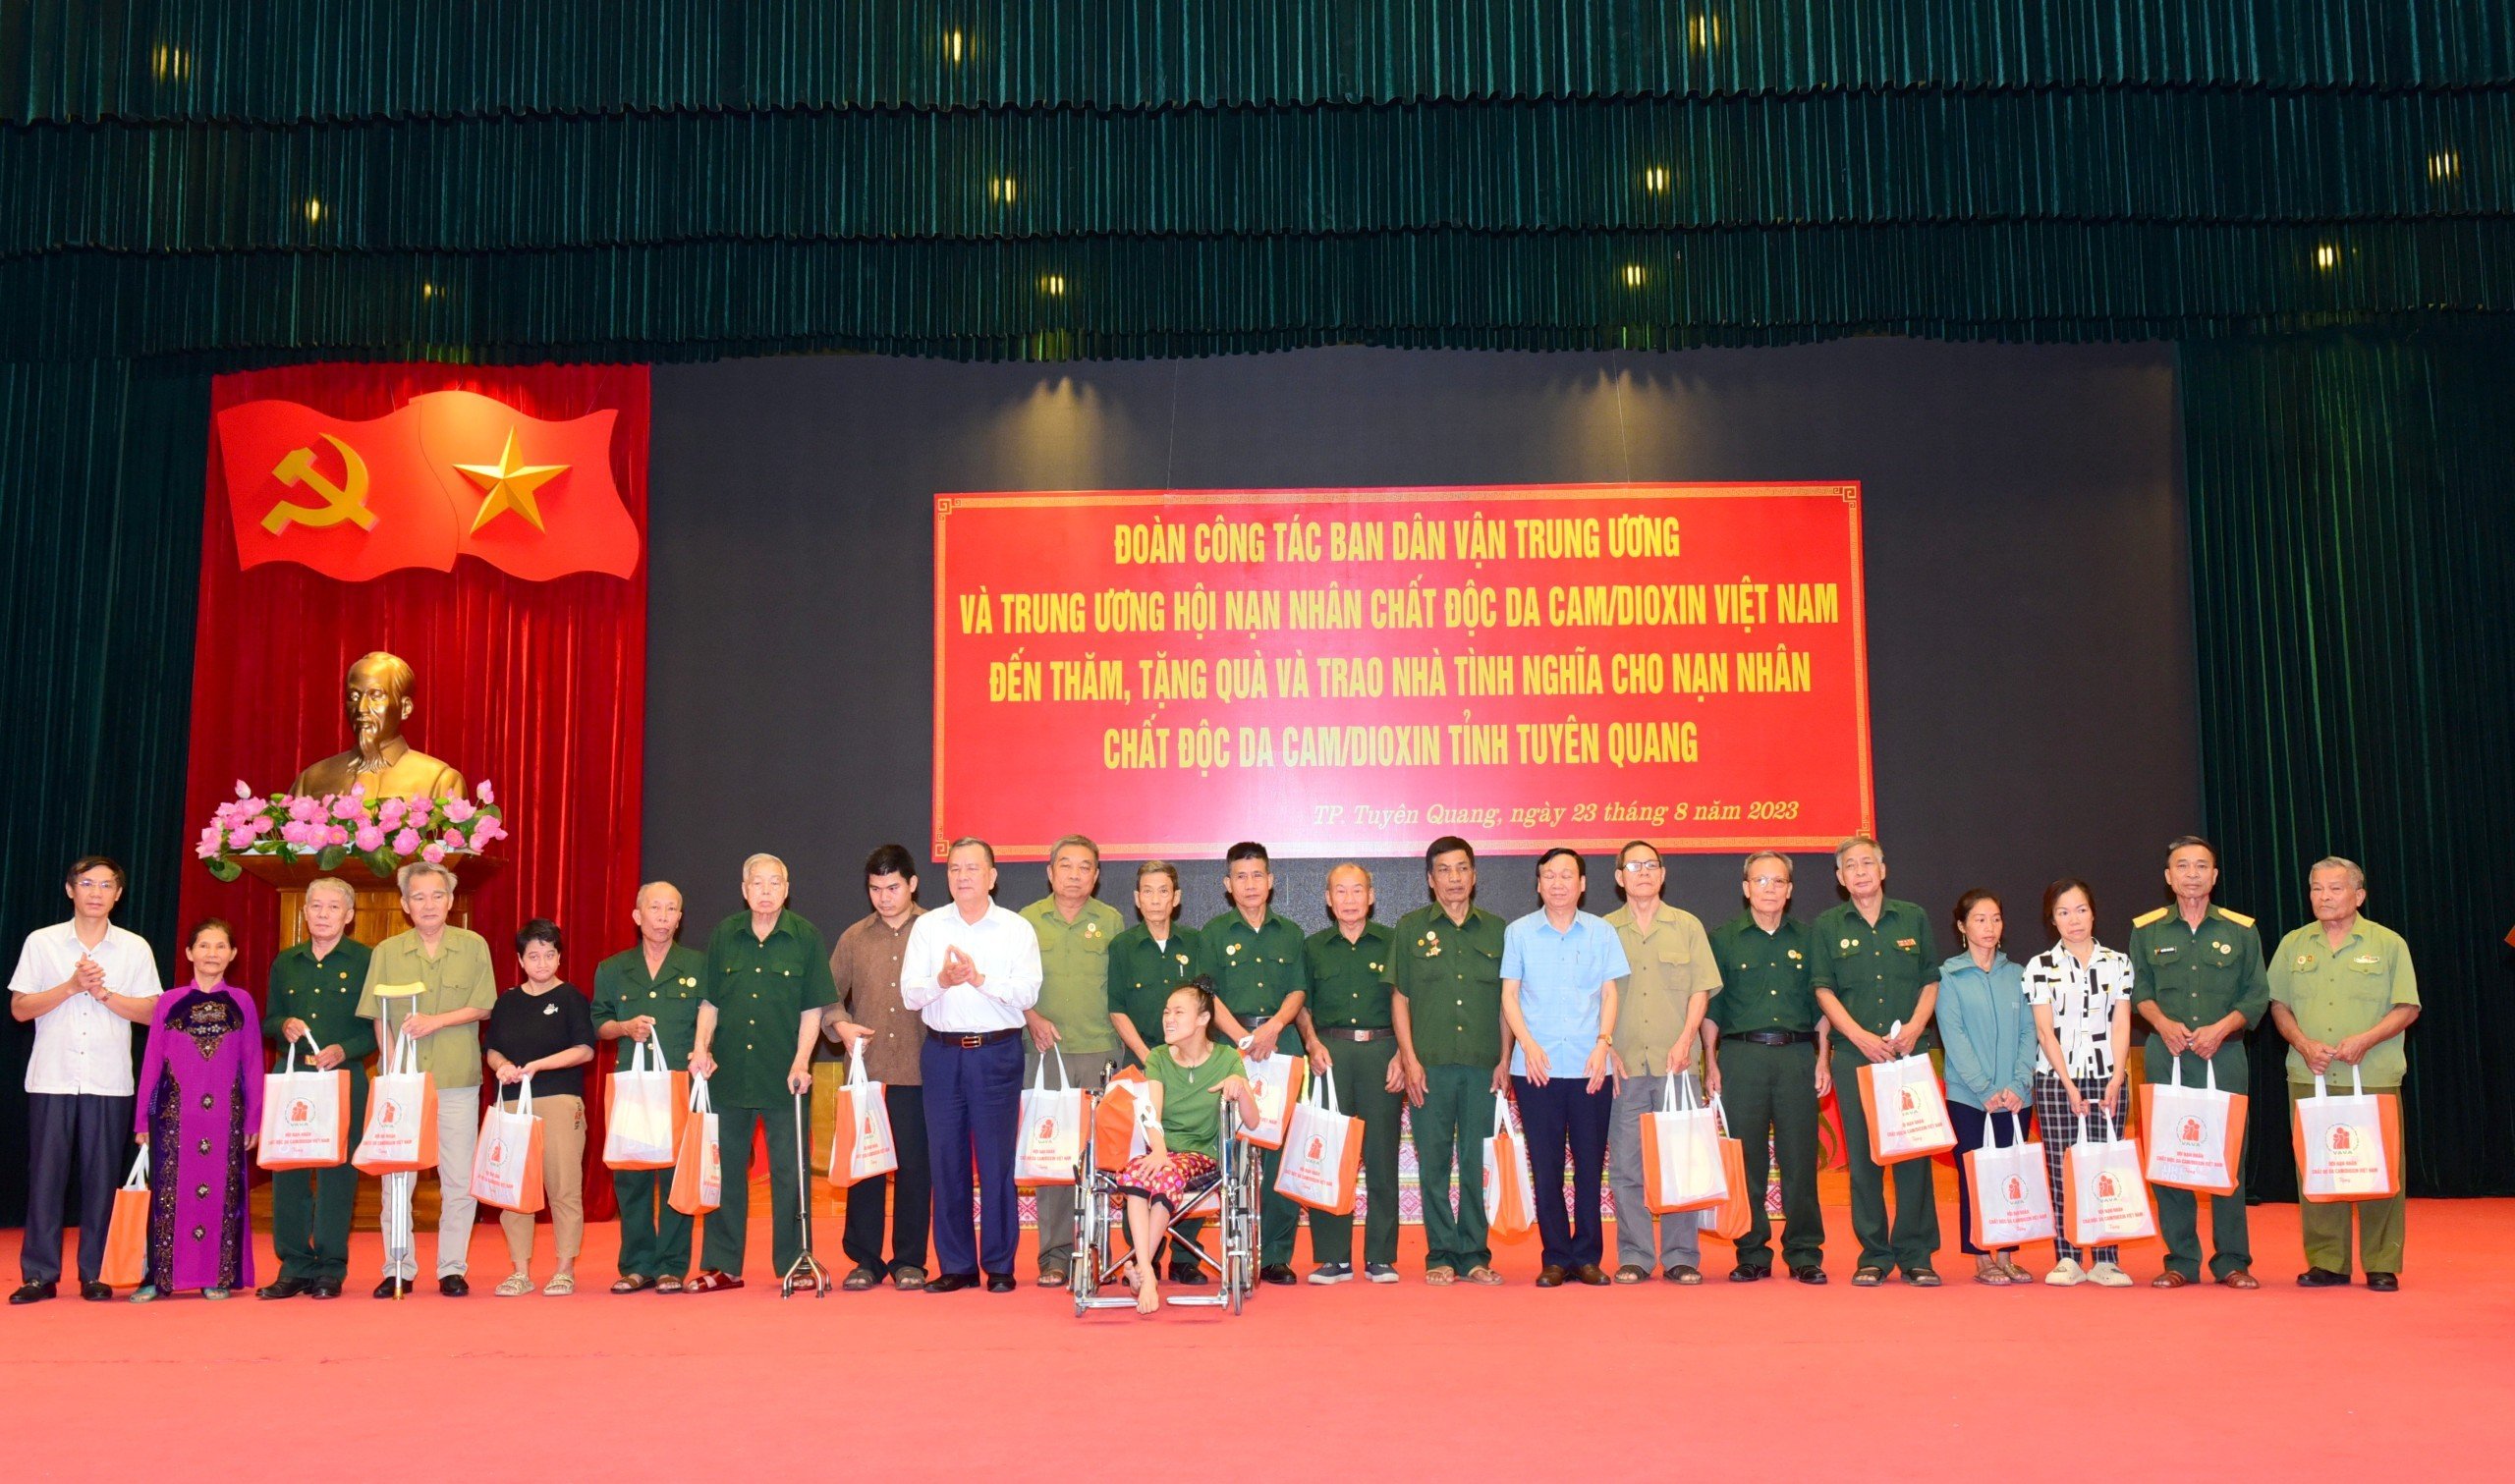 Lãnh đạo Ban Dân vận Trung ương thăm và tặng quà nạn nhân chất độc da cam/dioxin tỉnh Tuyên Quang